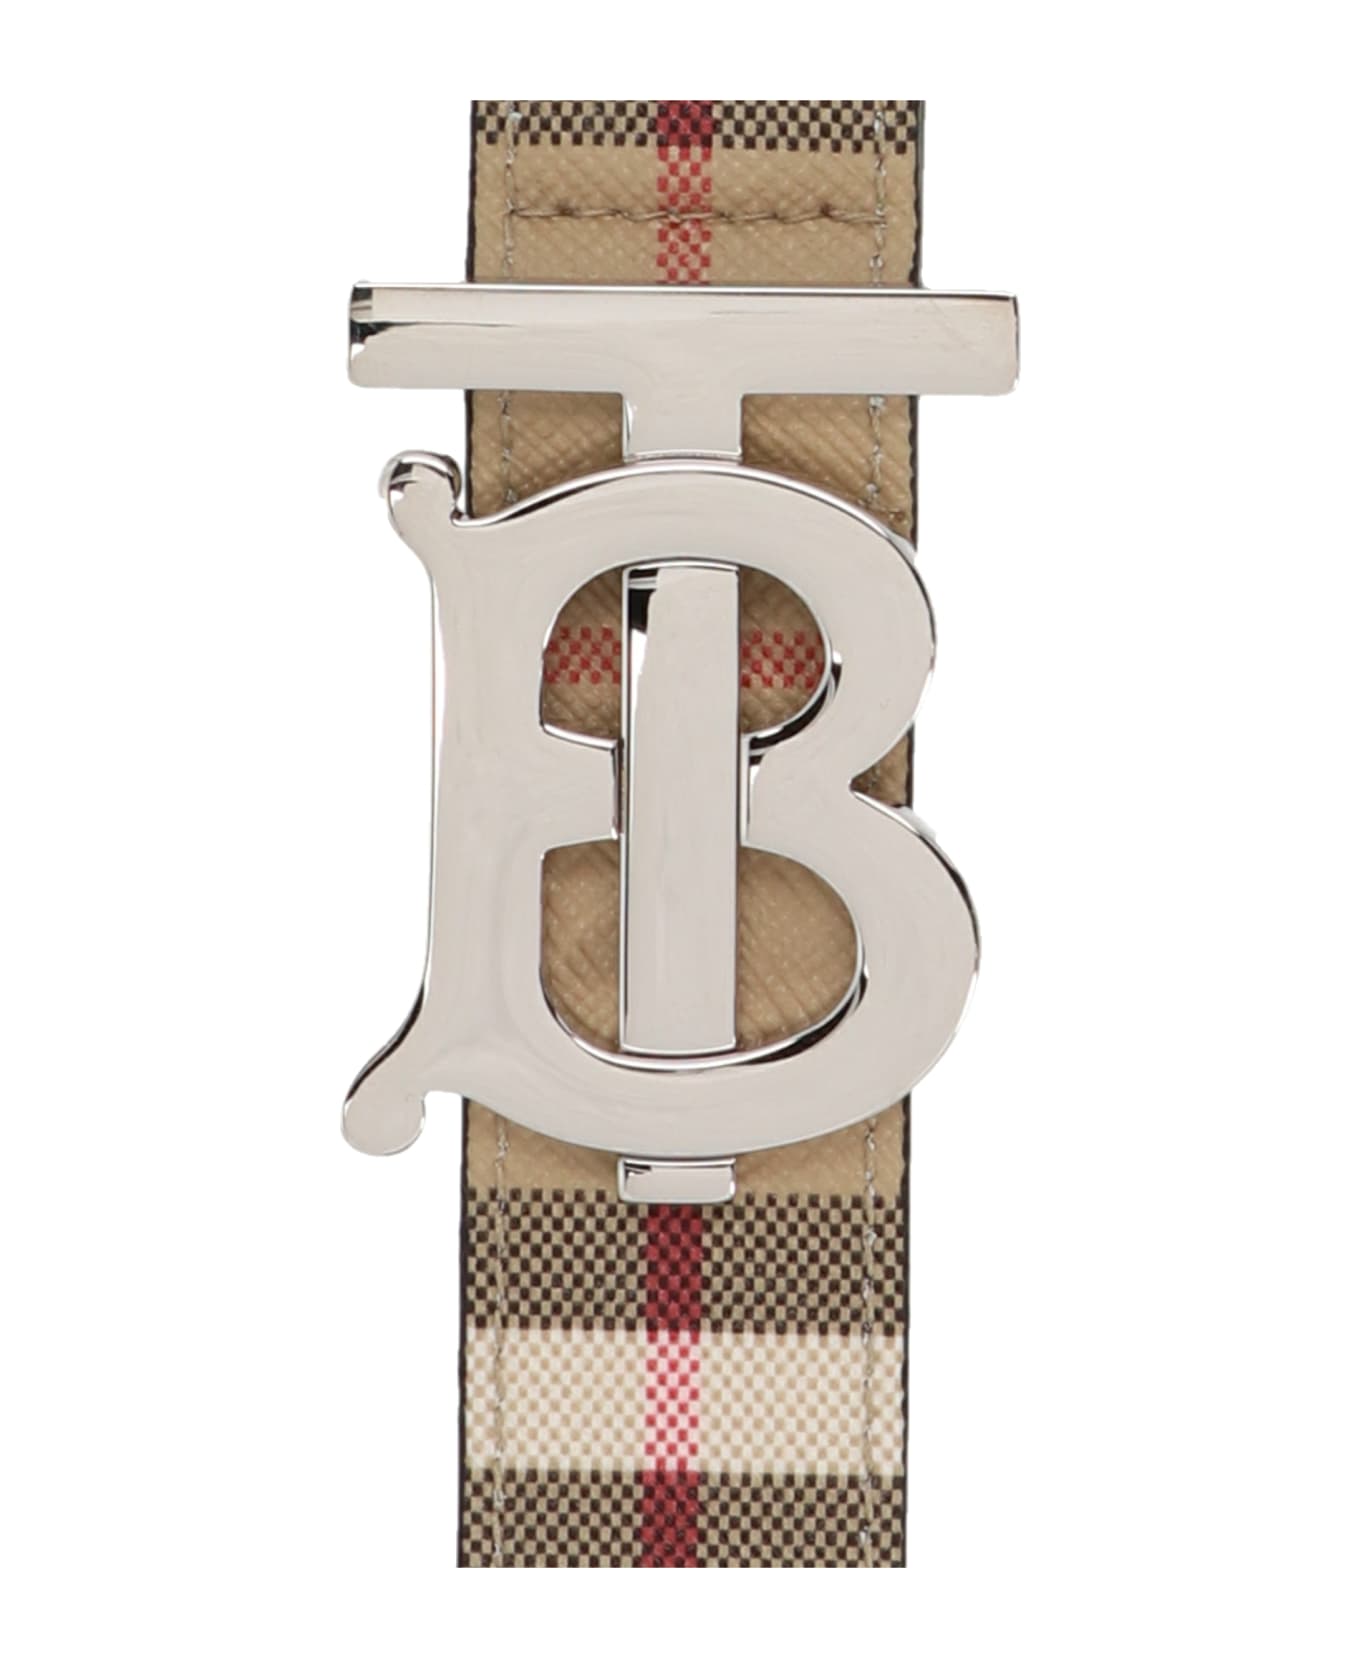 Burberry 'vintage Check' Keyring - Beige